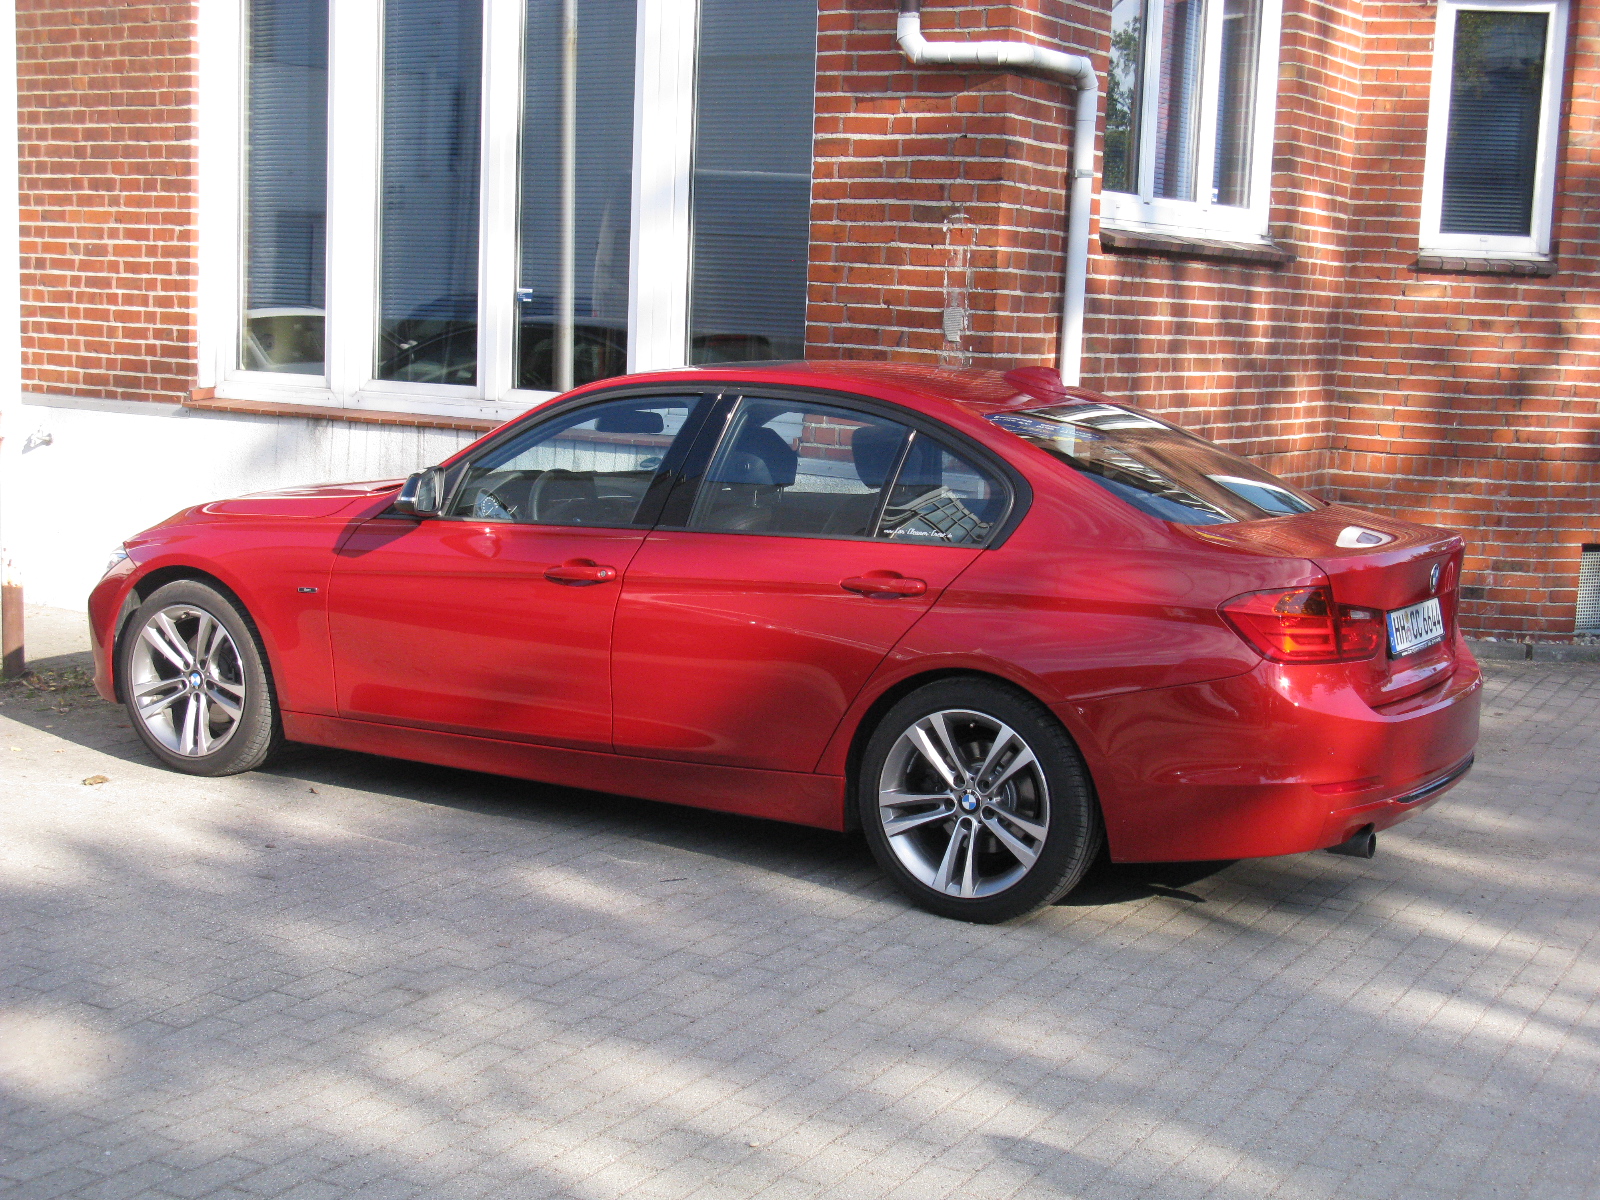 BMW 3 Series (F30) - Wikipedia